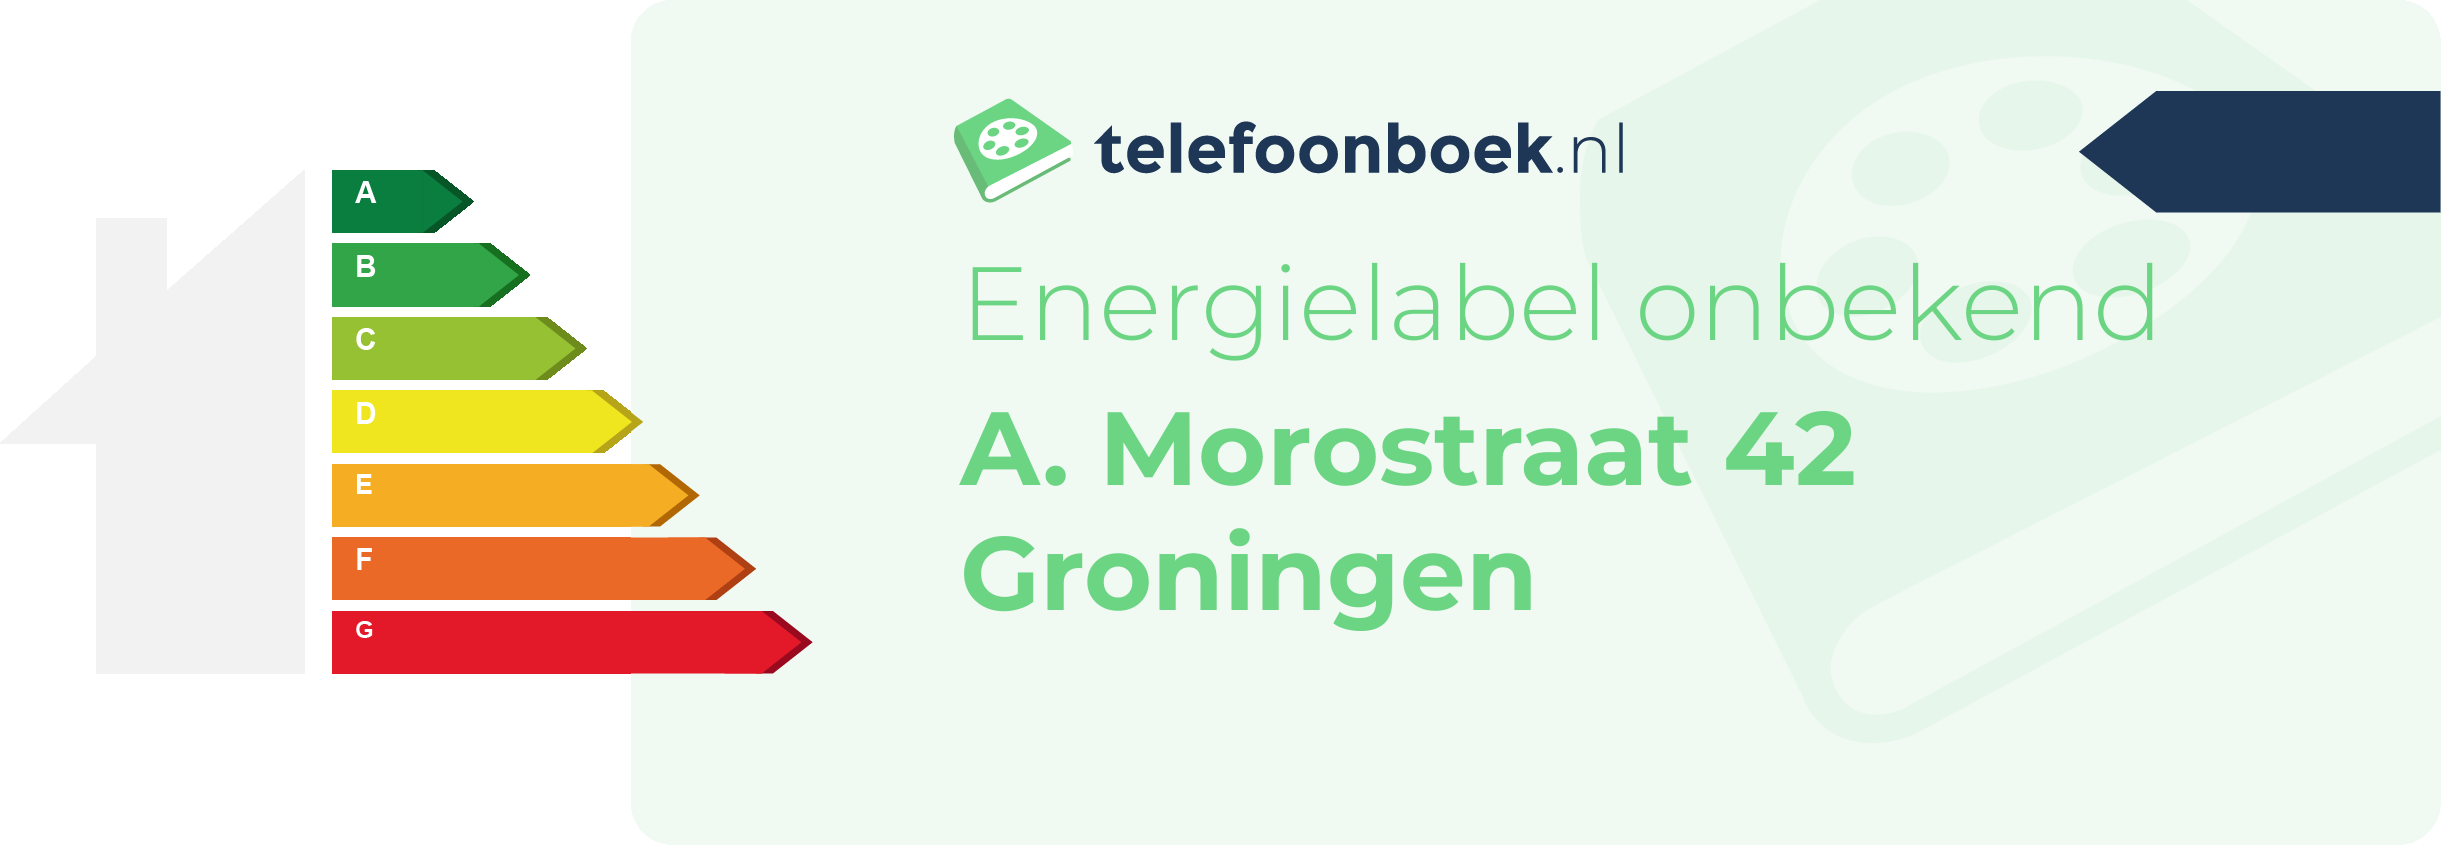 Energielabel A. Morostraat 42 Groningen